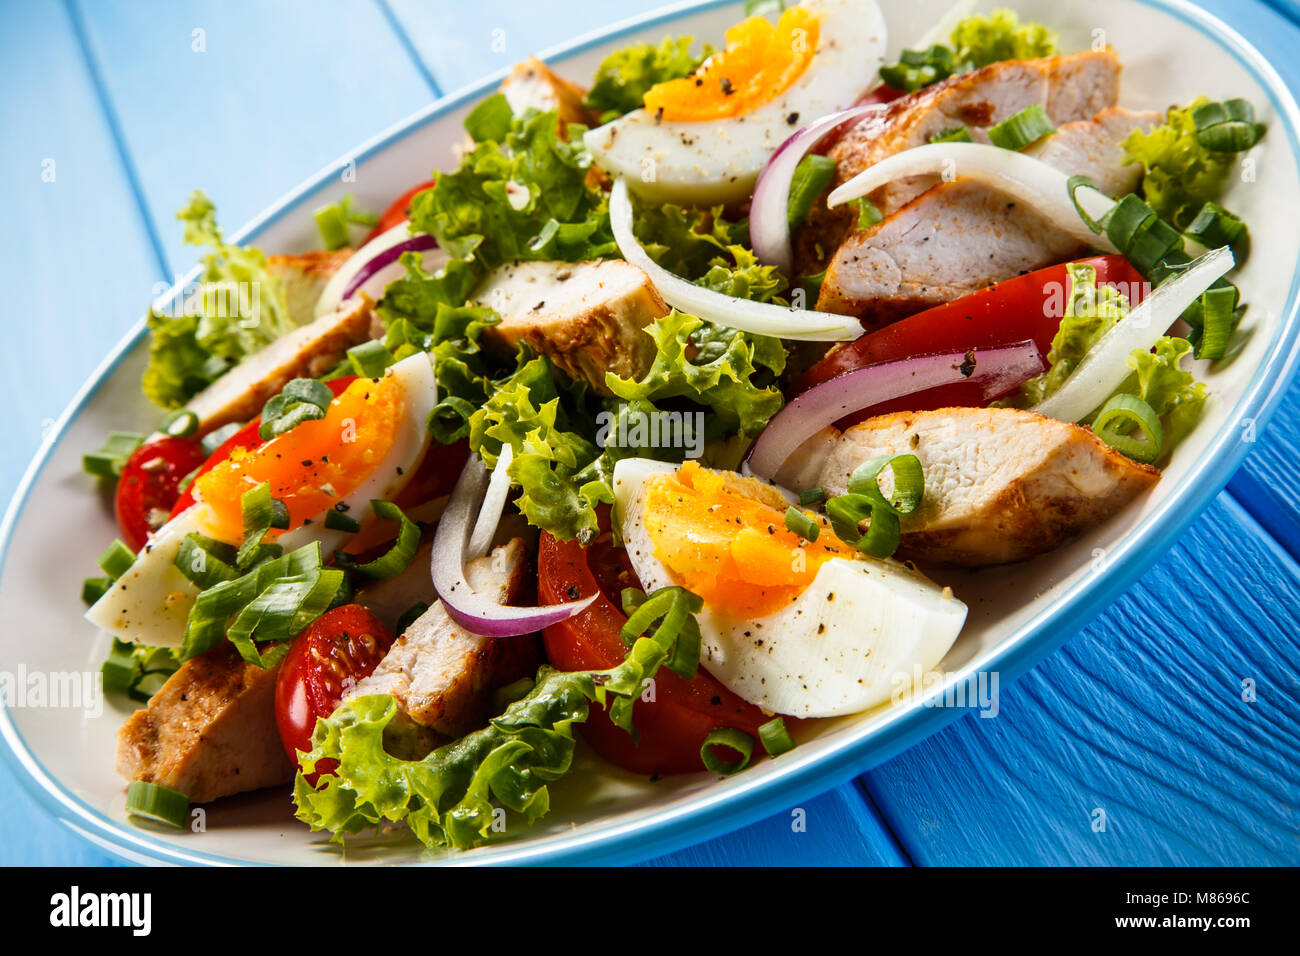 Caesar salad on wooden table Stock Photo